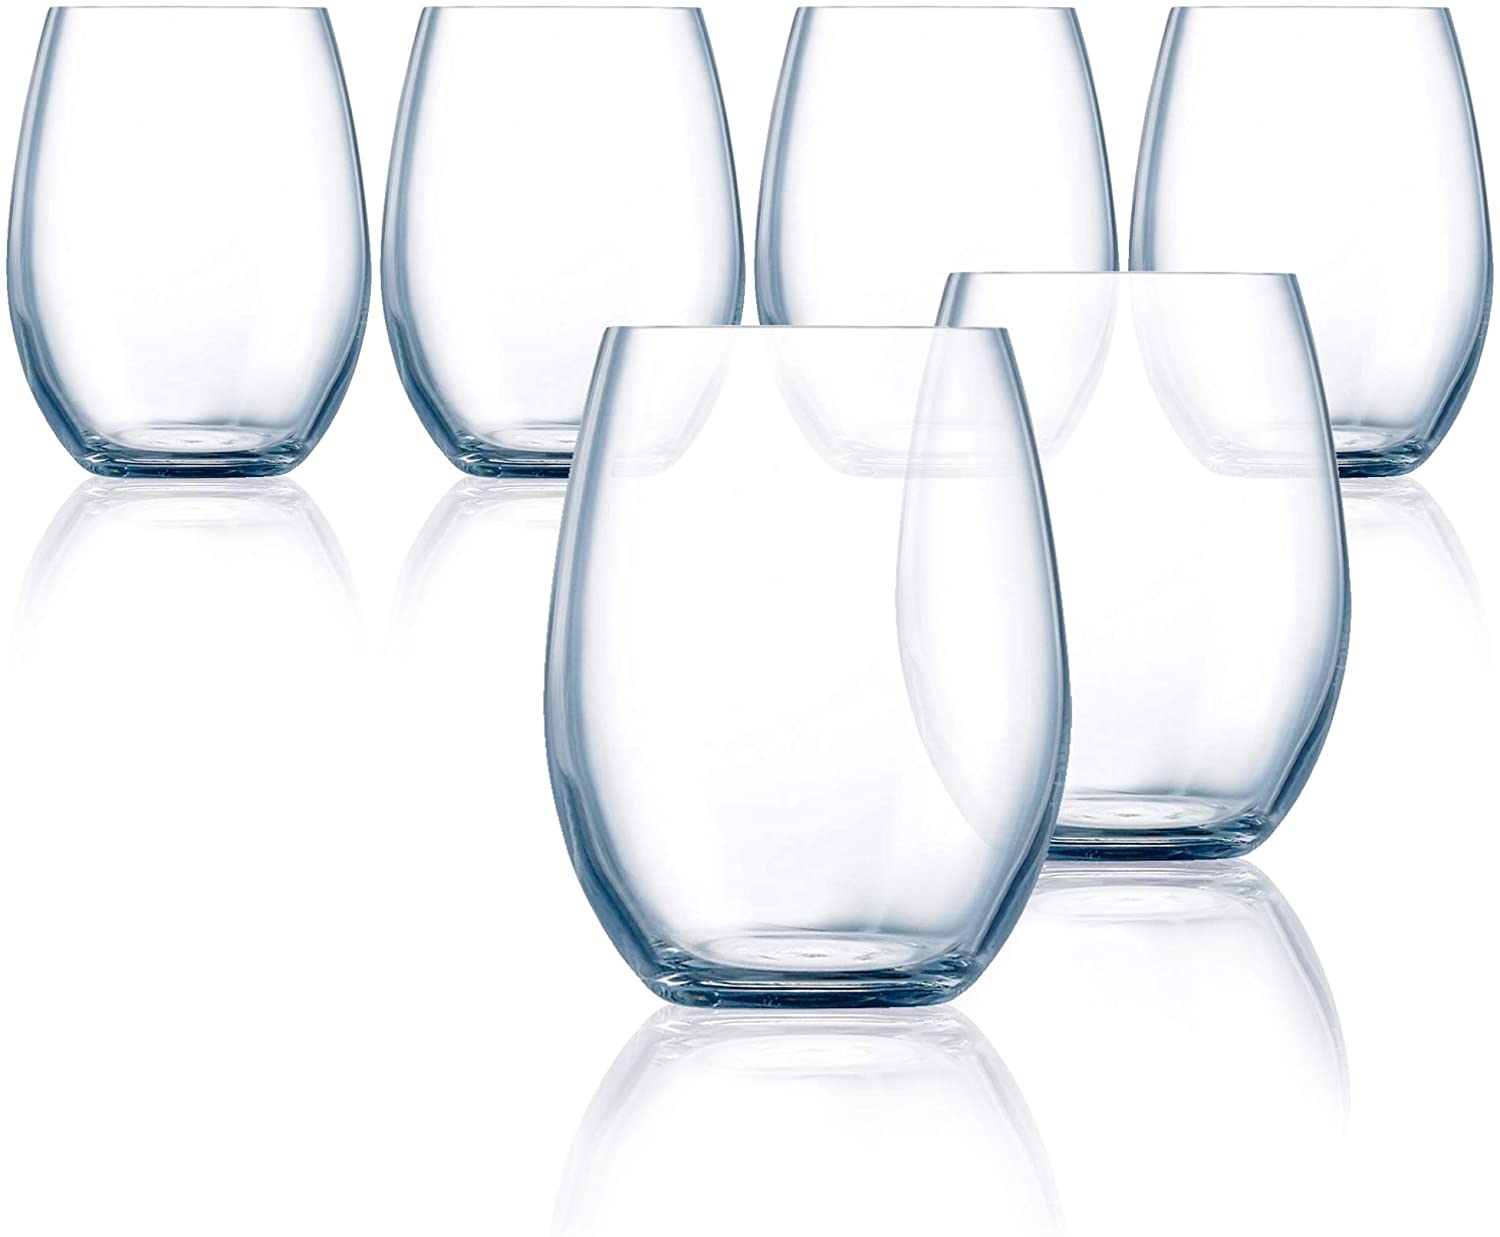 Chef & Sommelier Grand Vin Stemless Wine Glasses